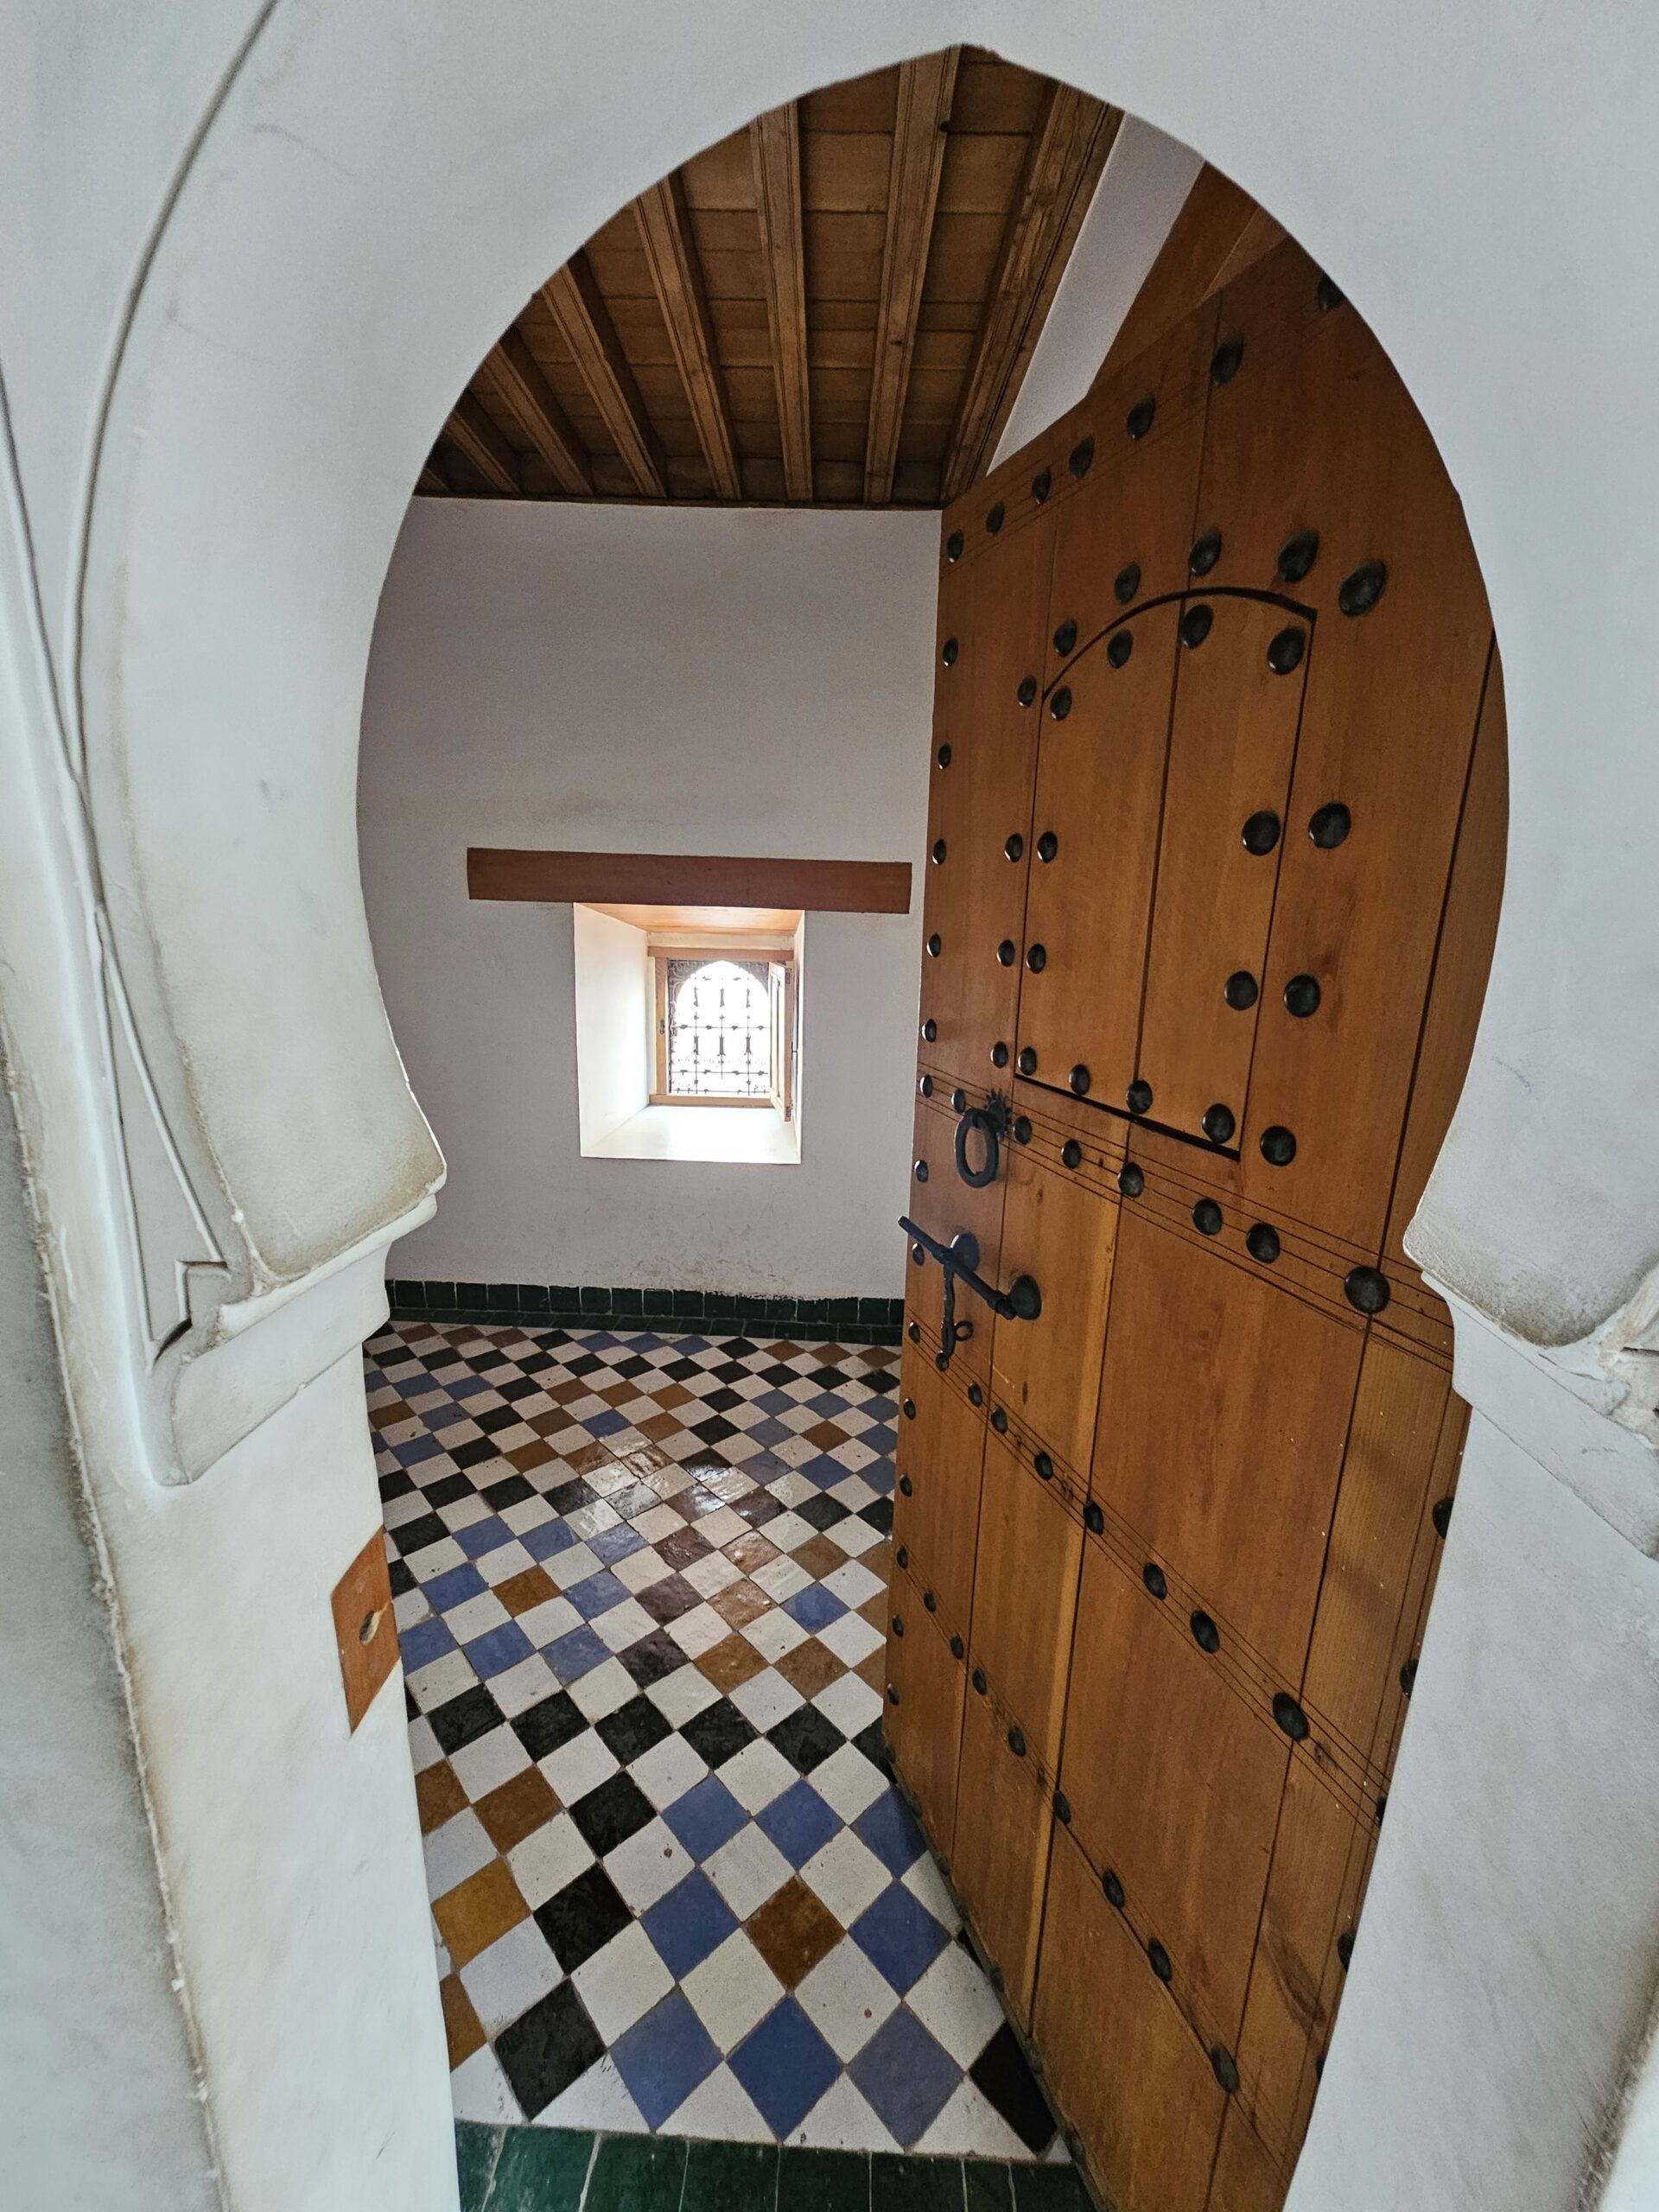 Door at Ben Youssef Madrasa, Marrakesh. Image by 360onhistory.com